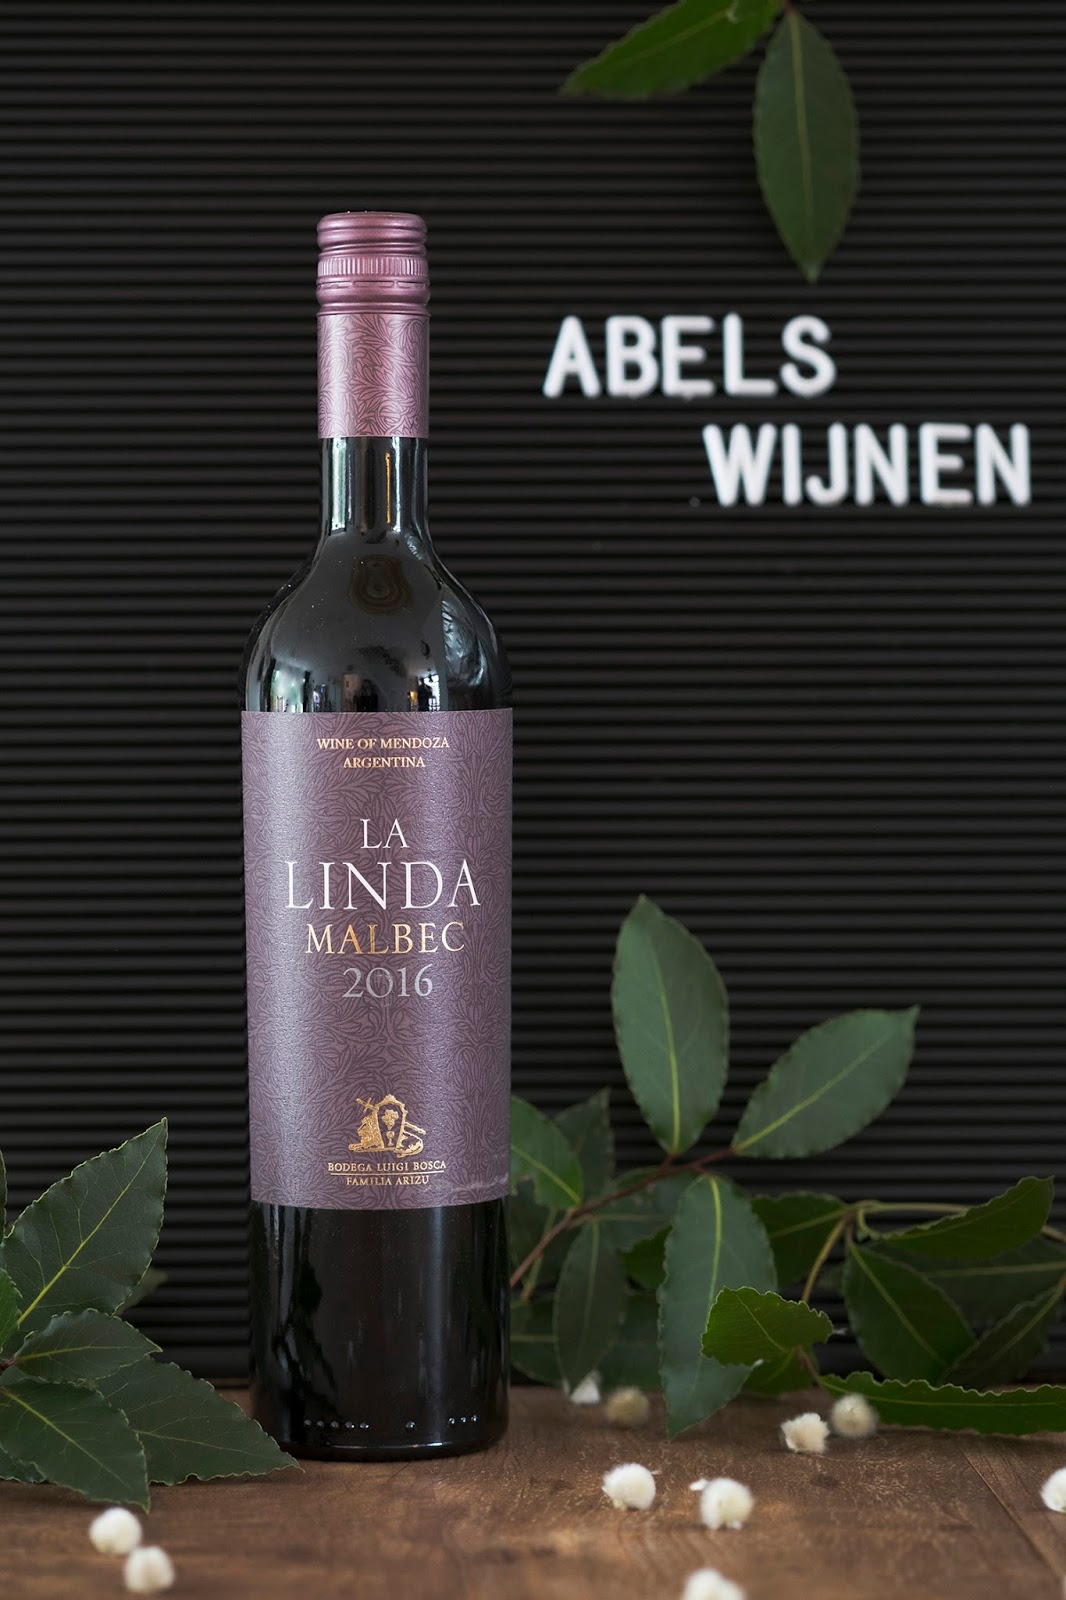 Abels wijnen 